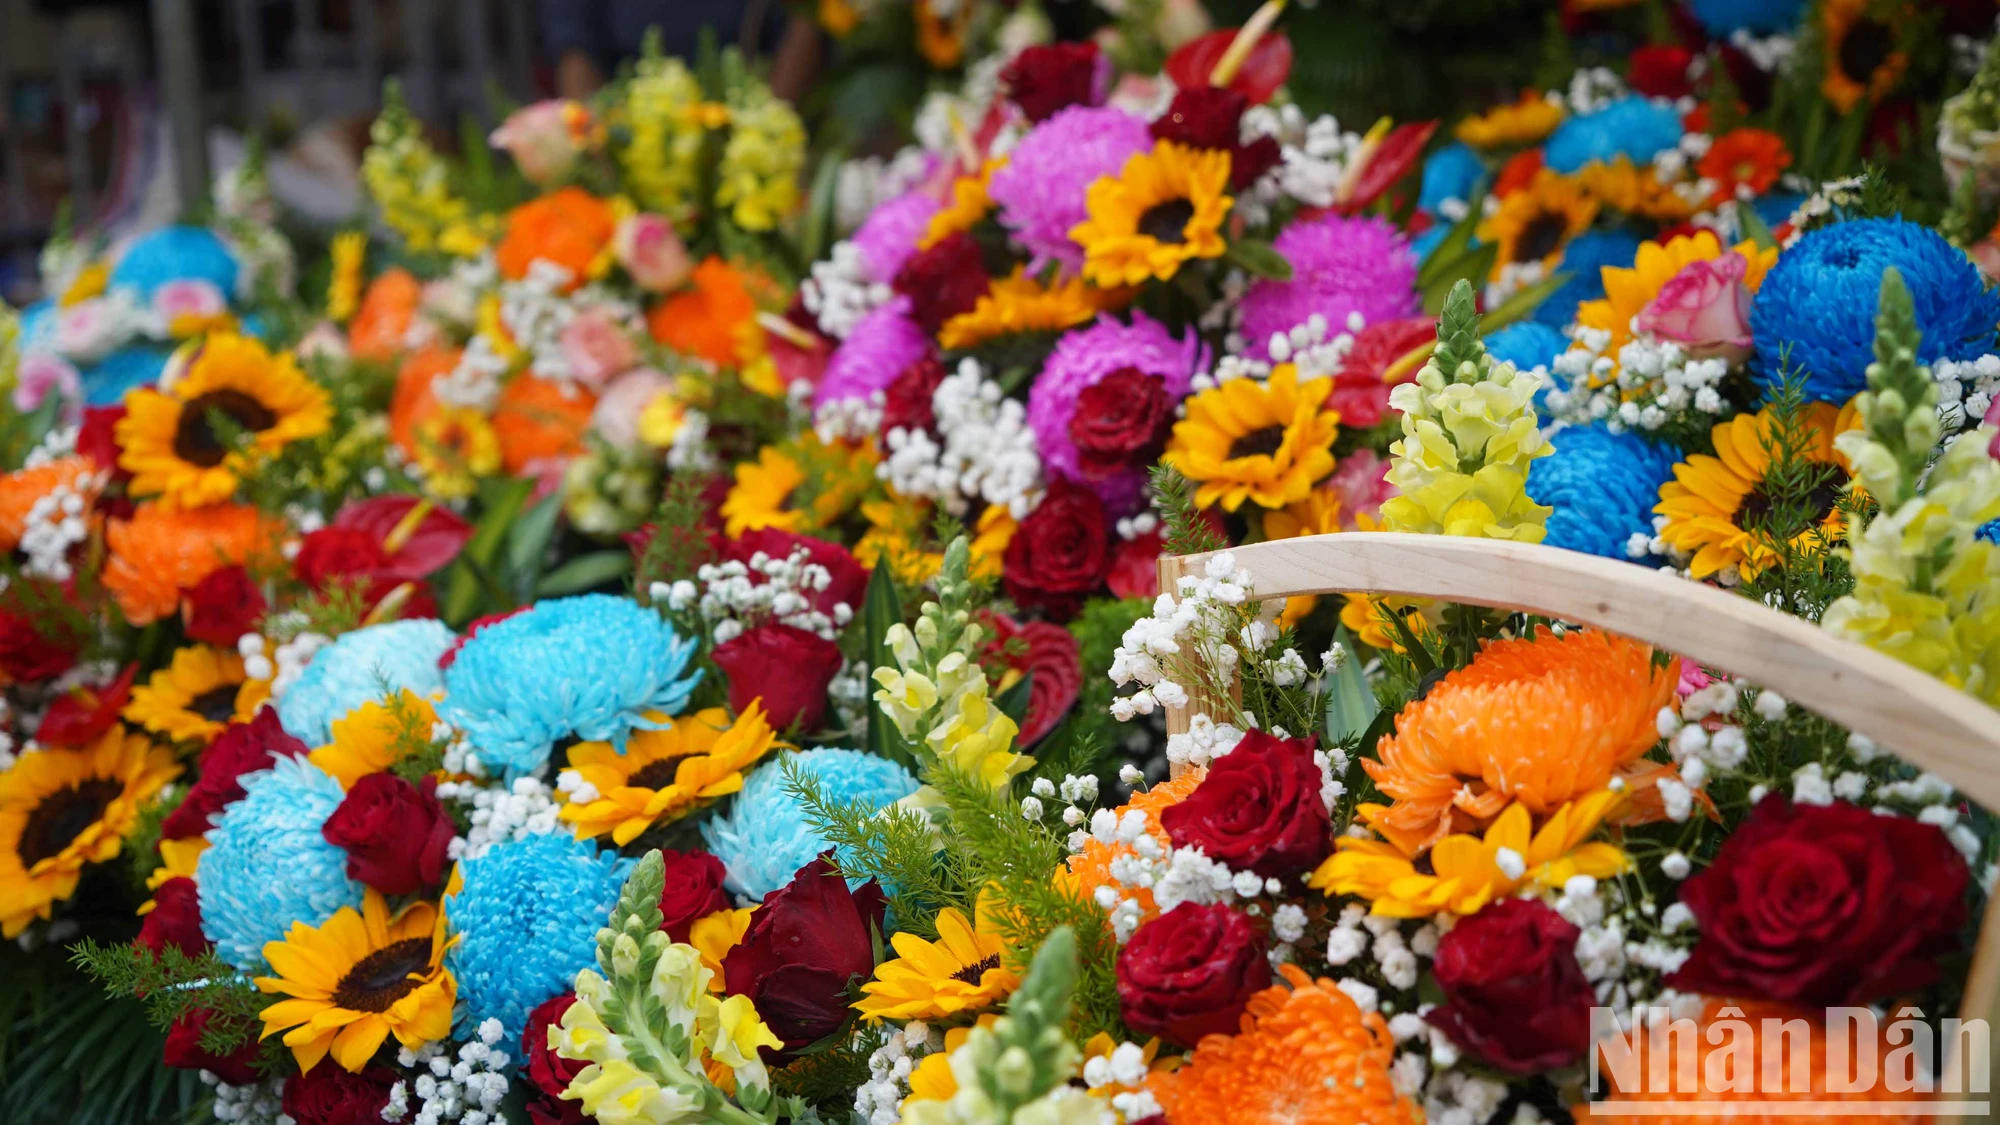 View - [Ảnh] Chợ hoa lớn nhất Thành phố Hồ Chí Minh nhộn nhịp trước ngày 8/3